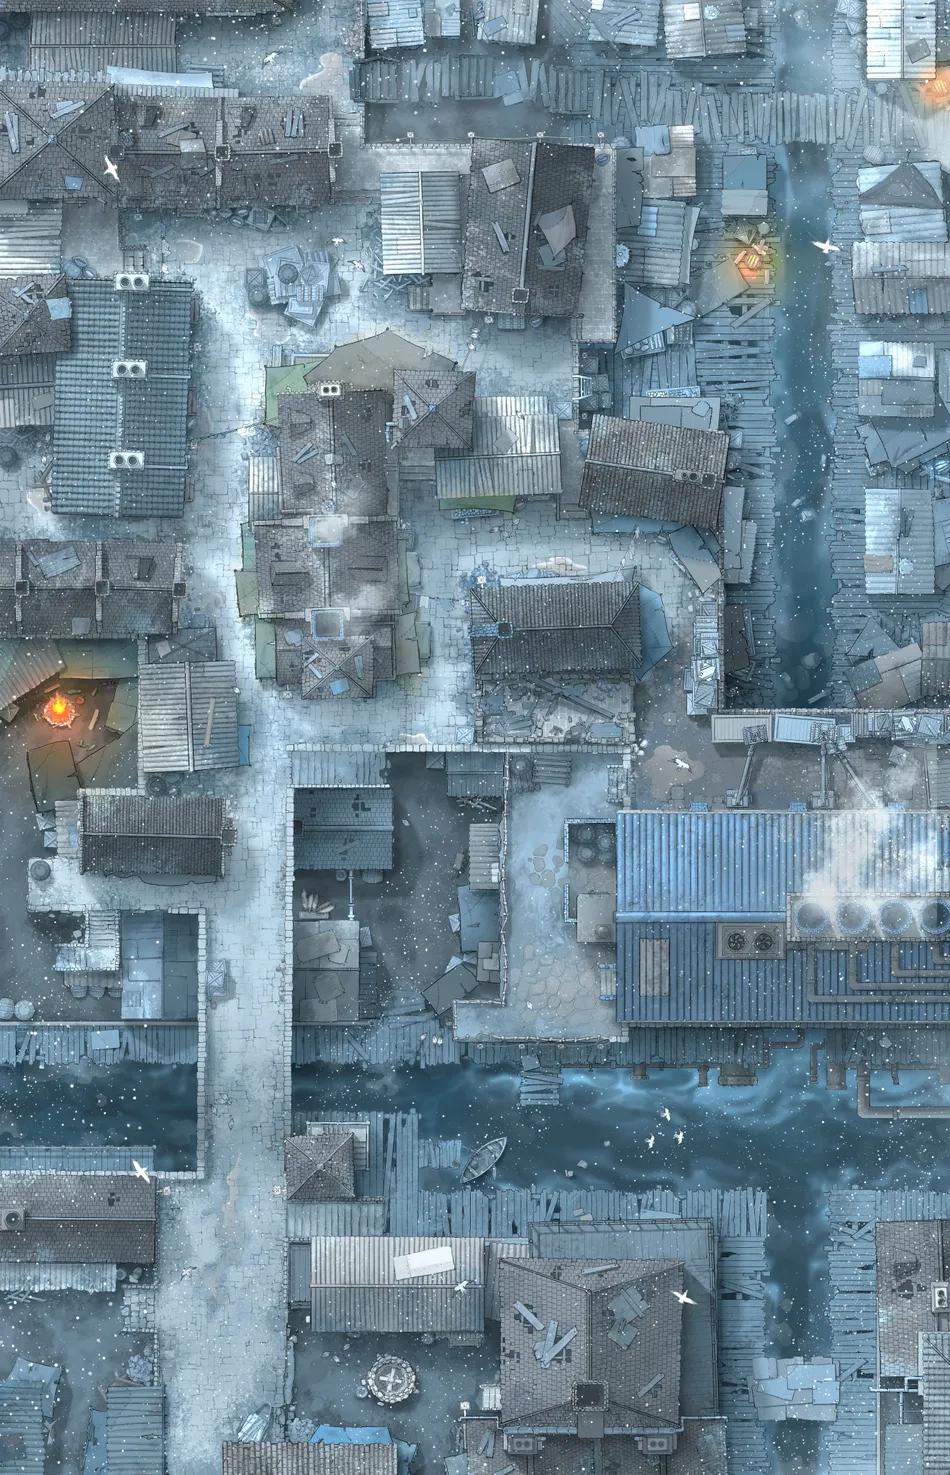 Slum District map, Winter Day variant